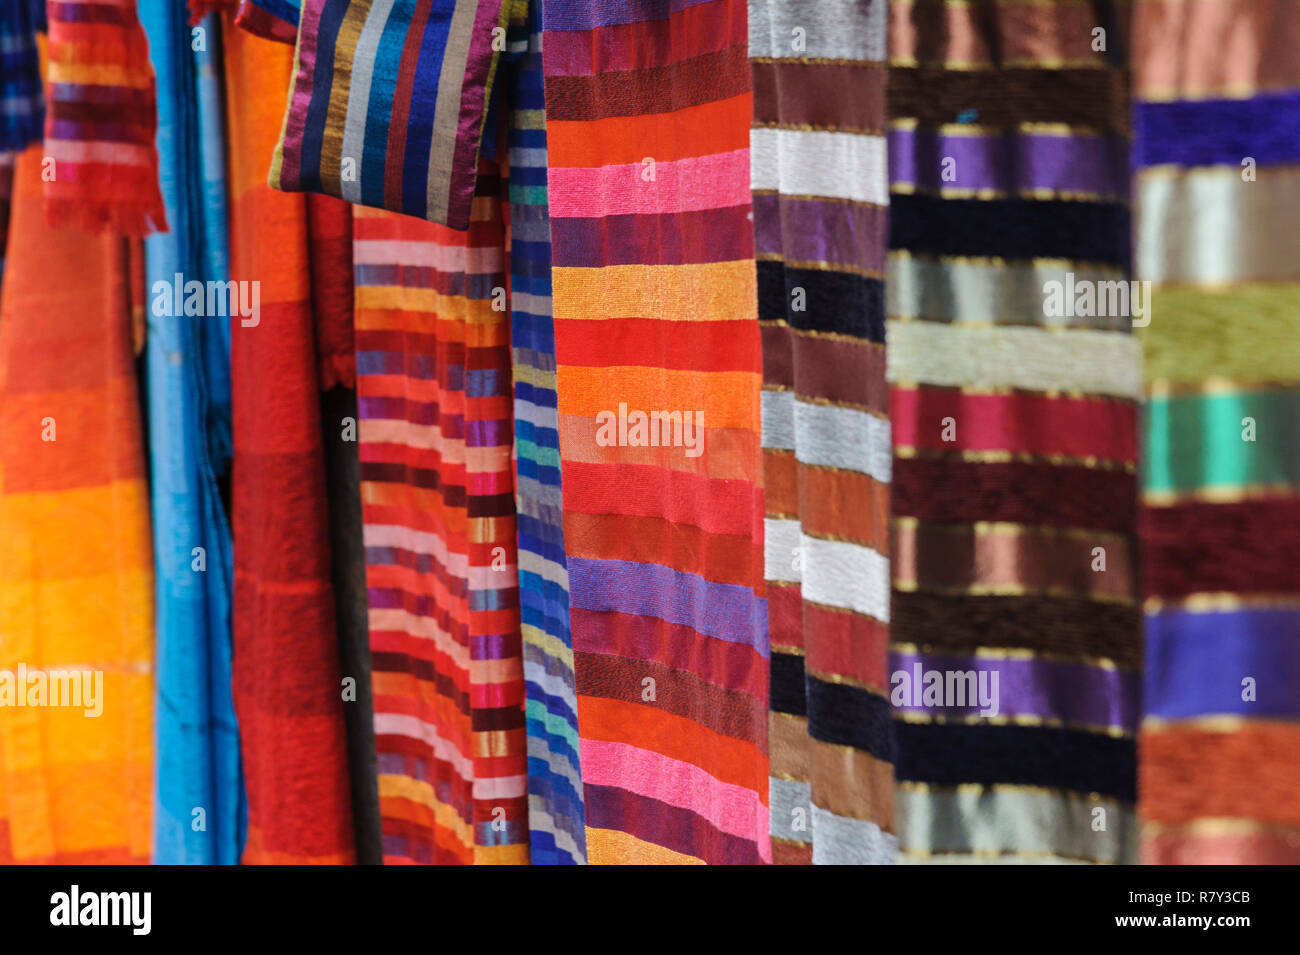 05-03-15, Marrakech, Marocco. Colorate sciarpe o tessuti per la vendita al di fuori di una bottega artigiana in un'antica e vecchia parte della citta'. Foto: © Si Foto Stock